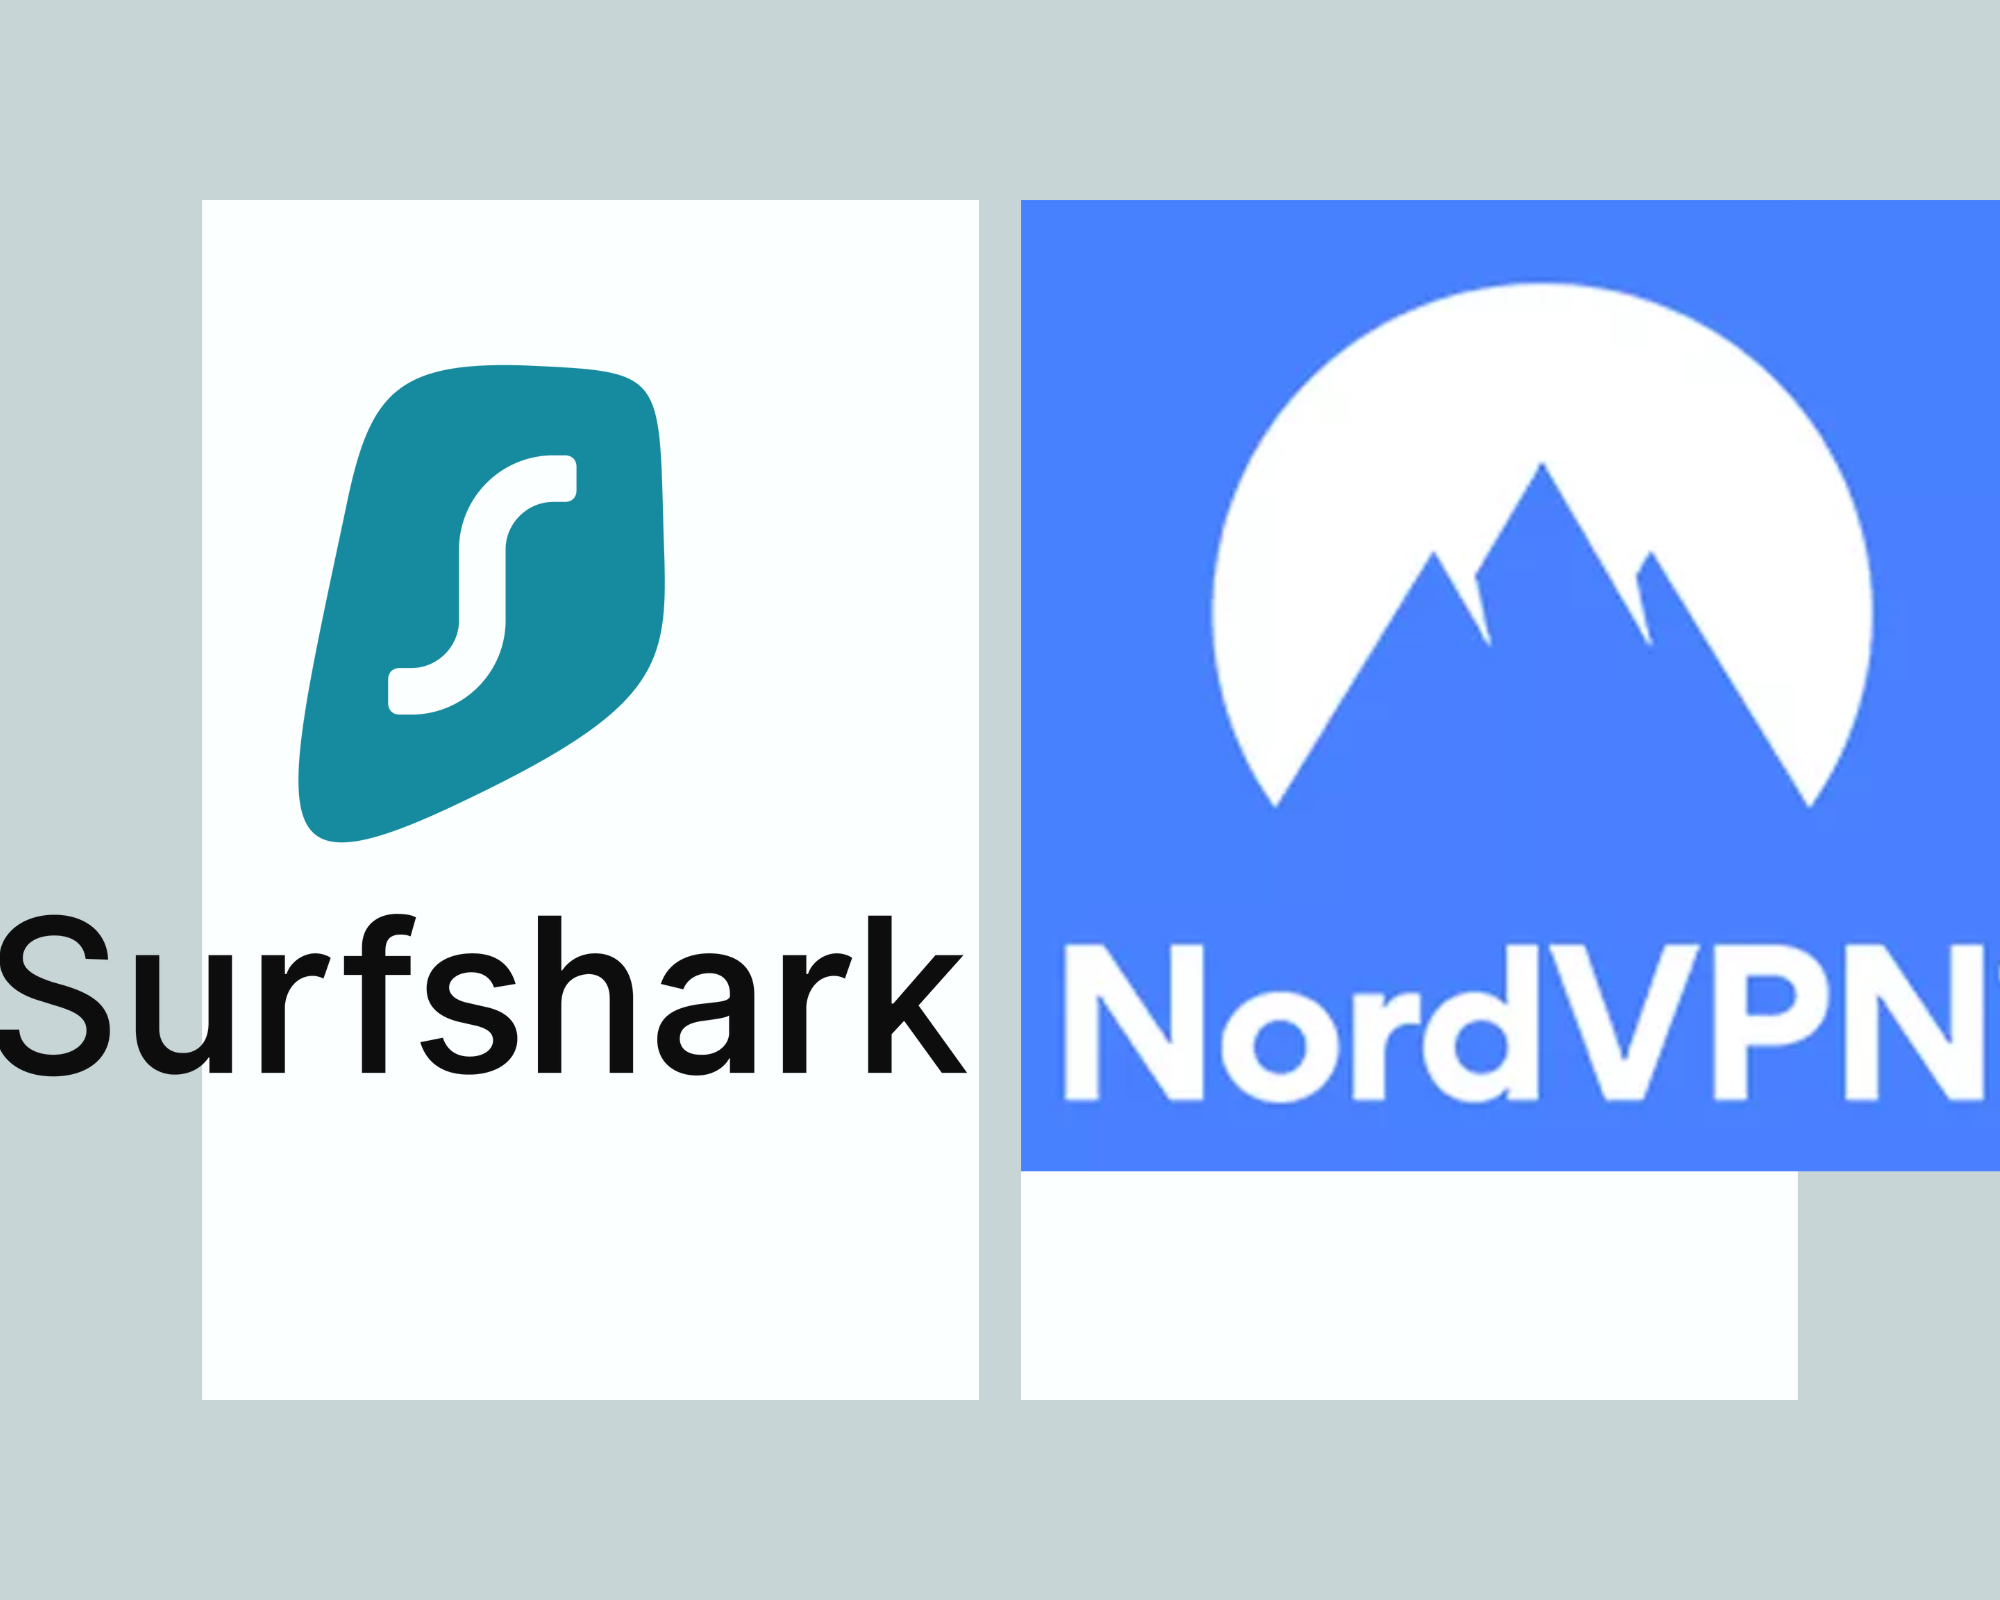 Surfshark v NordVPN: The Ultimate Battle of the Best VPN Services